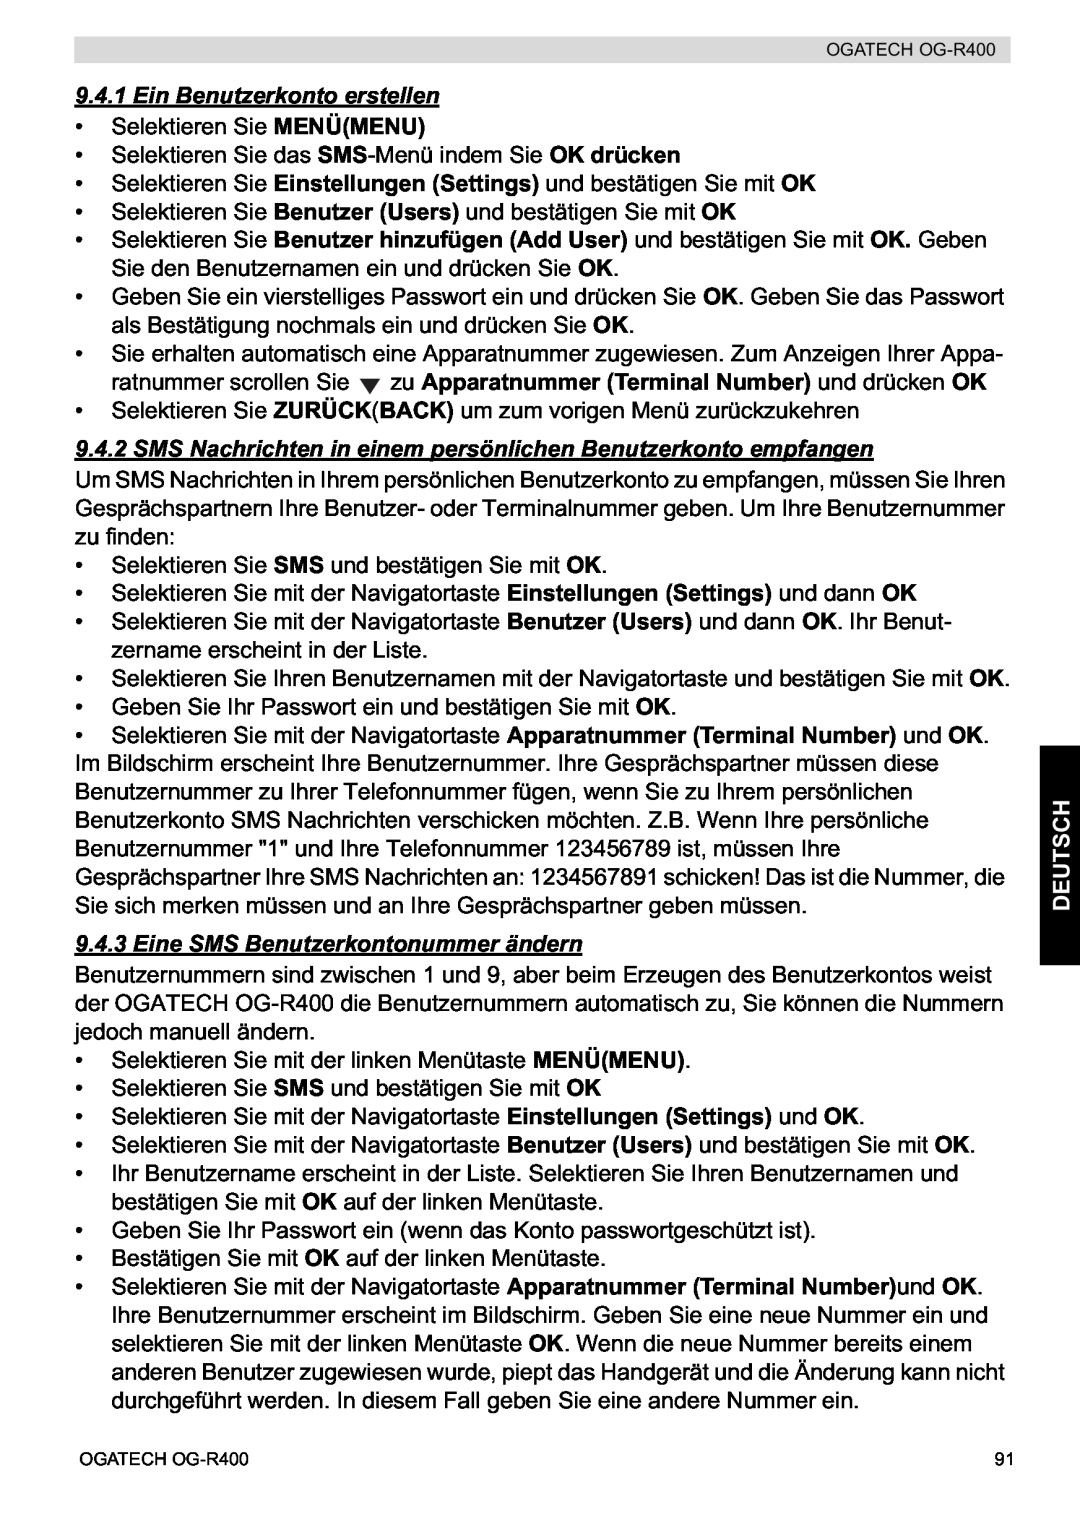 Topcom OG-R400 manual Ein Benutzerkonto erstellen, SMS Nachrichten in einem persönlichen Benutzerkonto empfangen, Deutsch 